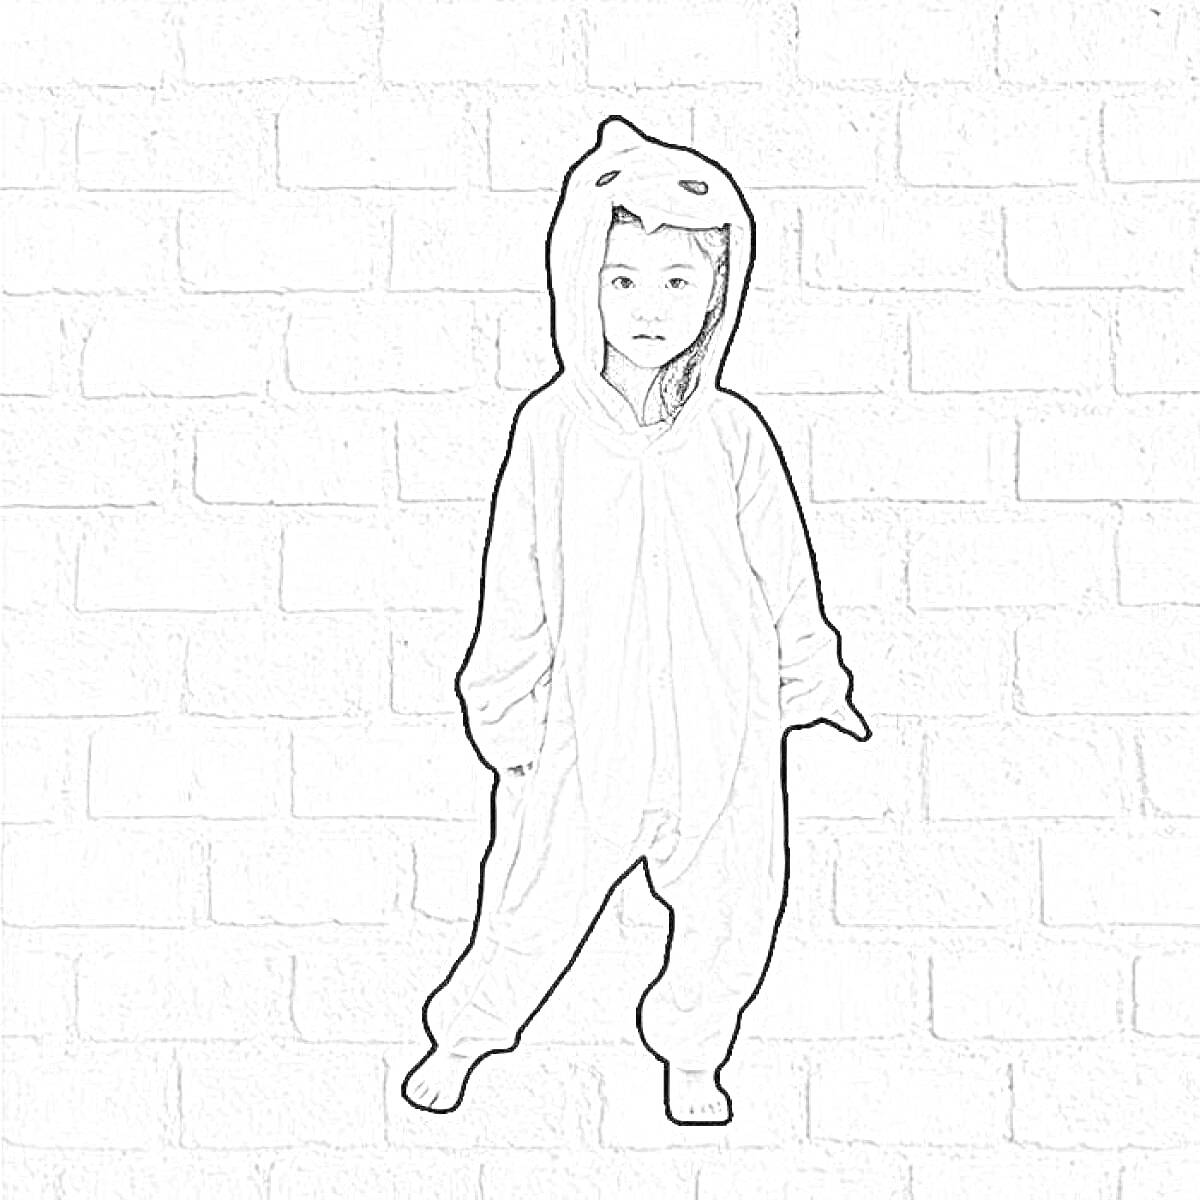 Раскраска Ребёнок в плюшевом белом кигуруми с капюшоном в виде животного на фоне кирпичной стены